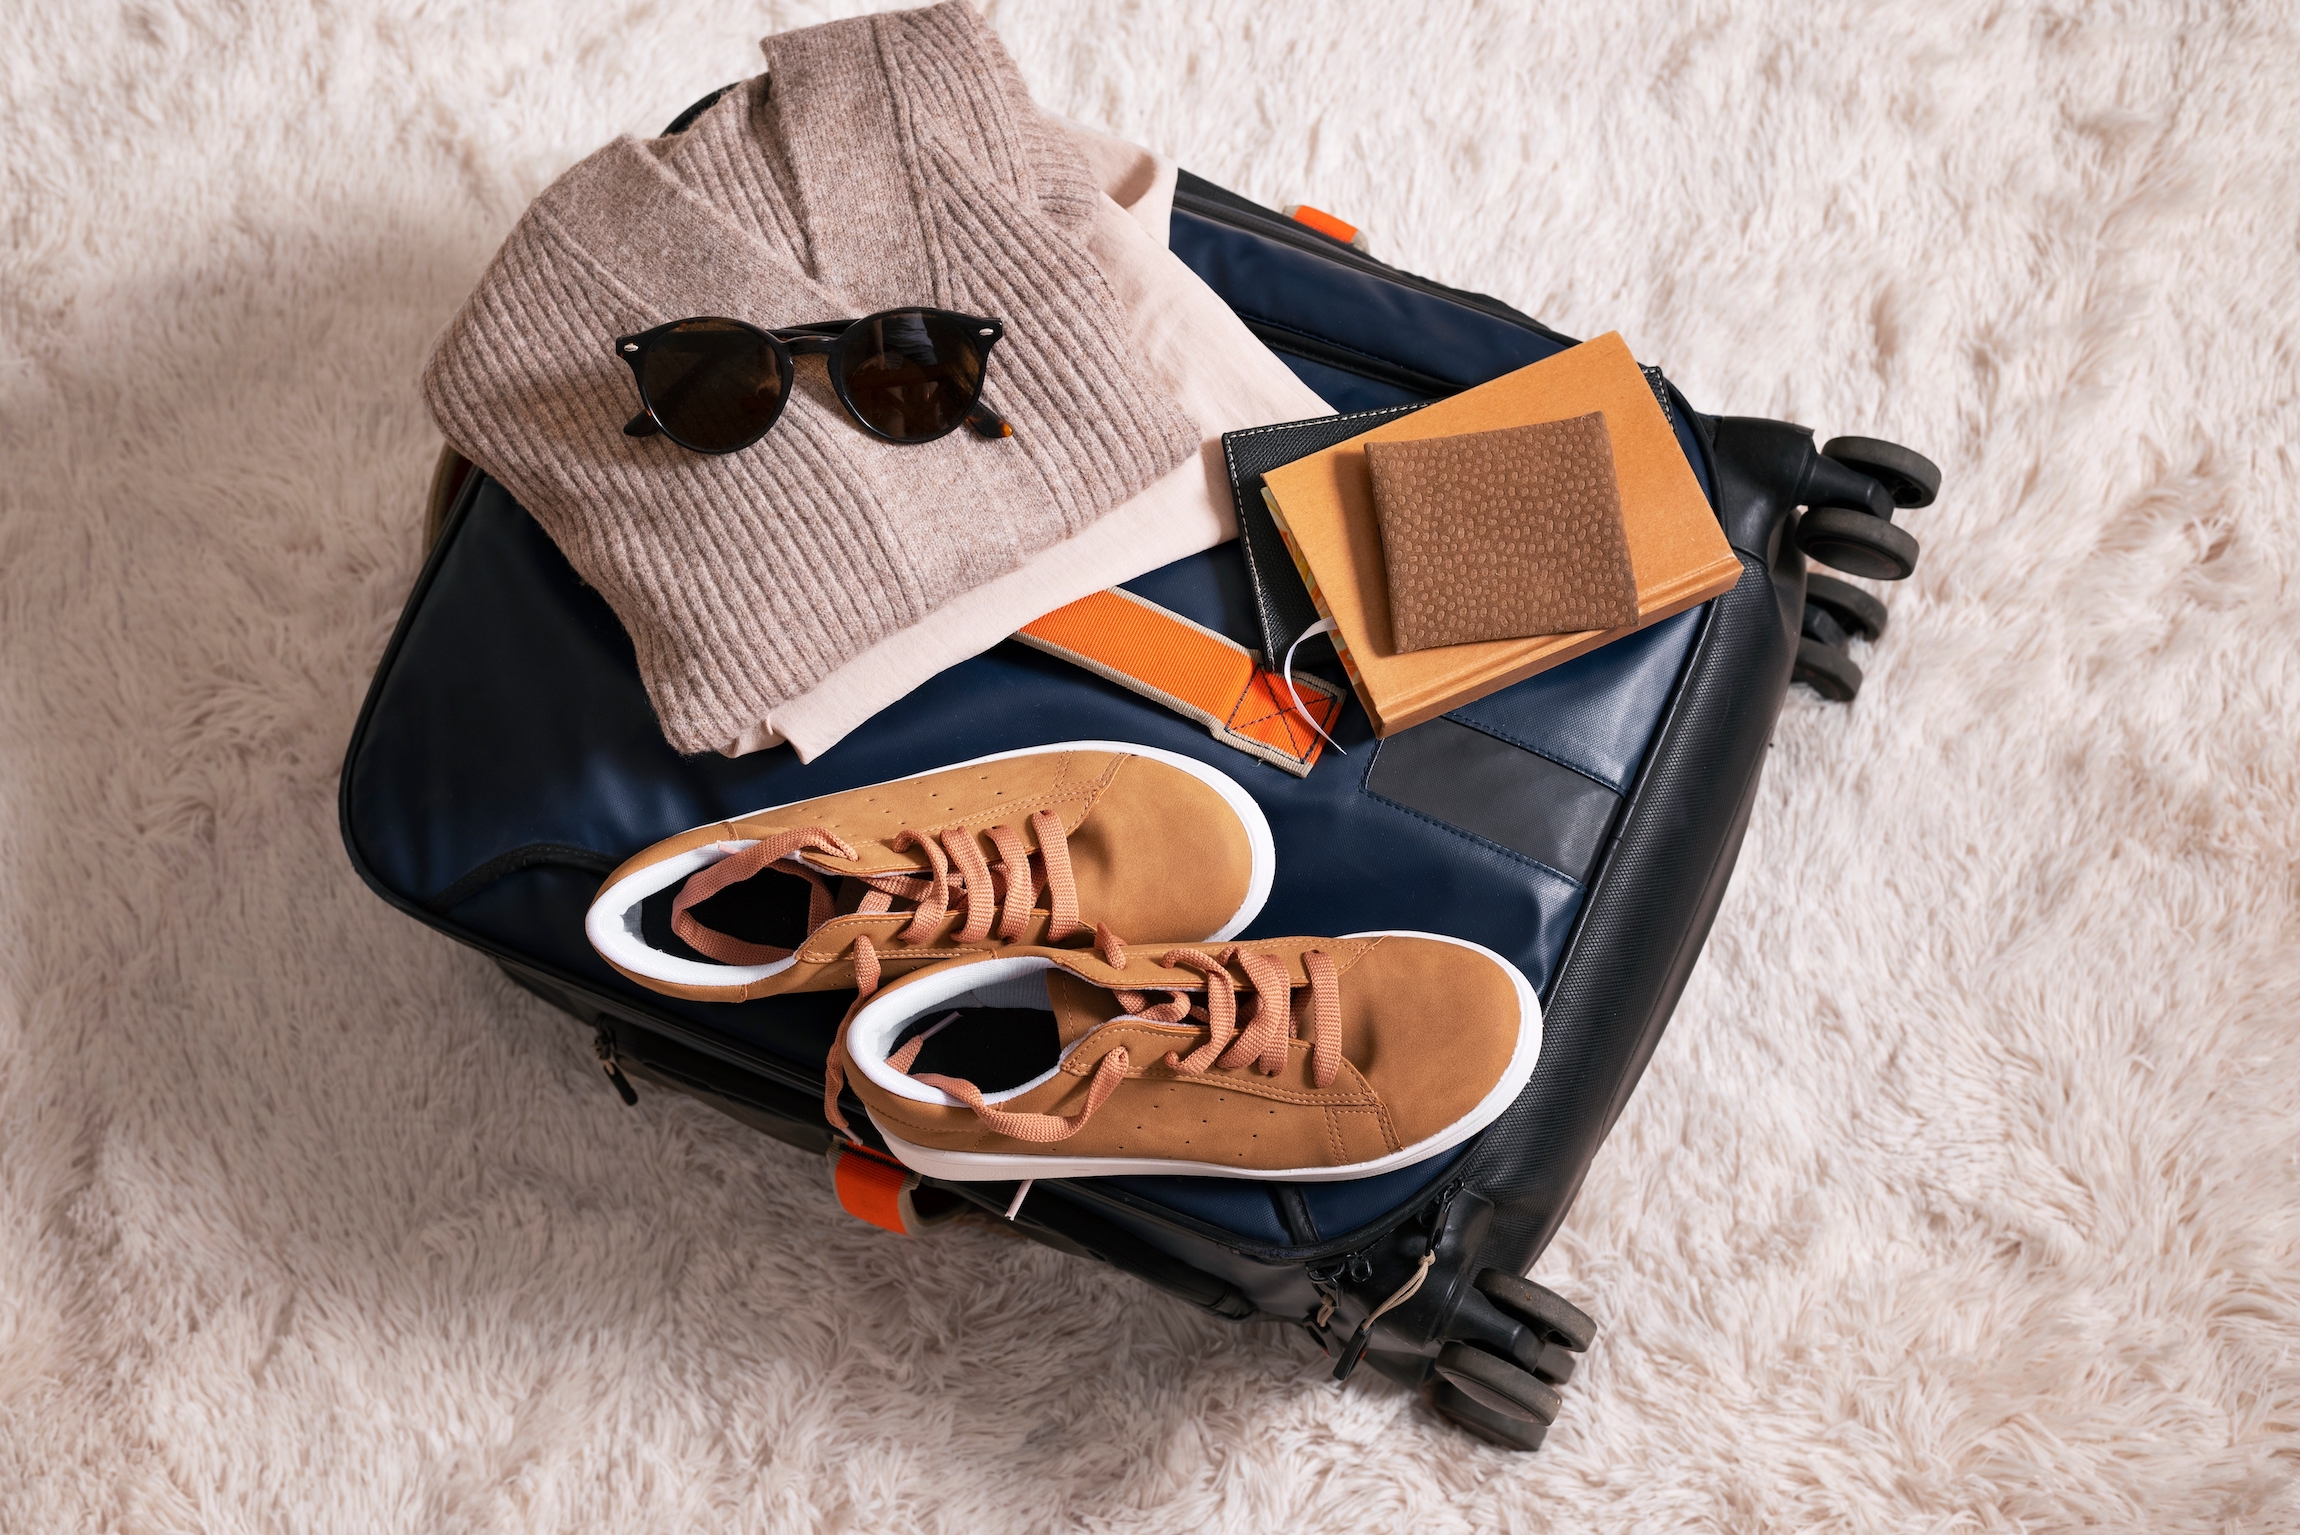 Torba podróżna z ubraniami i akcesoriami. walizka zapakowana do podróży. walizka z różnymi ubraniami zapakowanymi do podróży. koncepcja podróży i wakacji. Torba podróżna, torba podróżna.